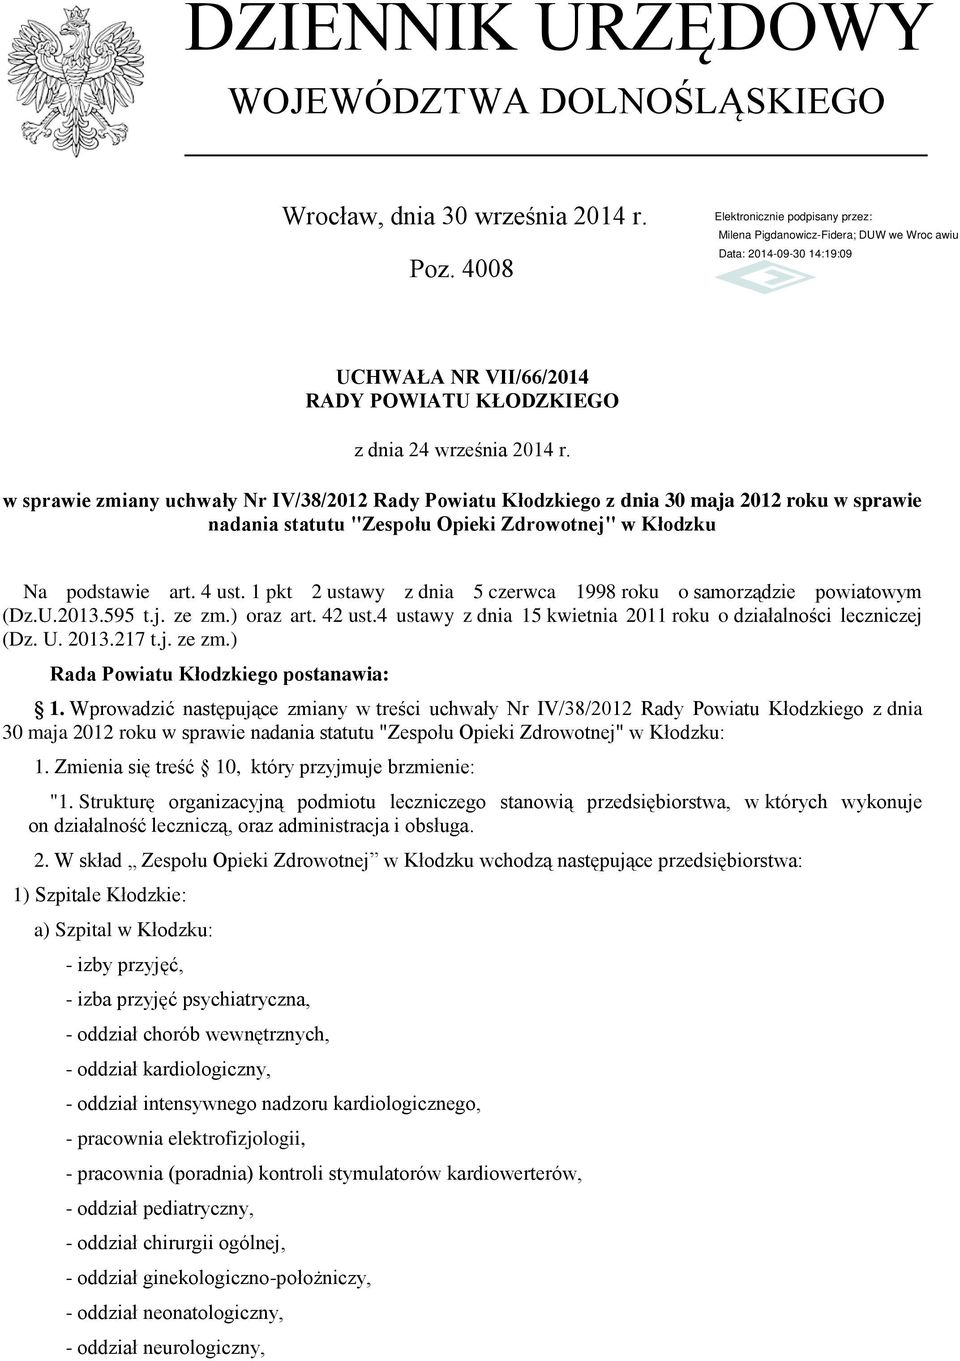 1 pkt 2 ustawy z dnia 5 czerwca 1998 roku o samorządzie powiatowym (Dz.U.2013.595 t.j. ze zm.) oraz art. 42 ust.4 ustawy z dnia 15 kwietnia 2011 roku o działalności leczniczej (Dz. U. 2013.217 t.j. ze zm.) Rada Powiatu Kłodzkiego postanawia: 1.